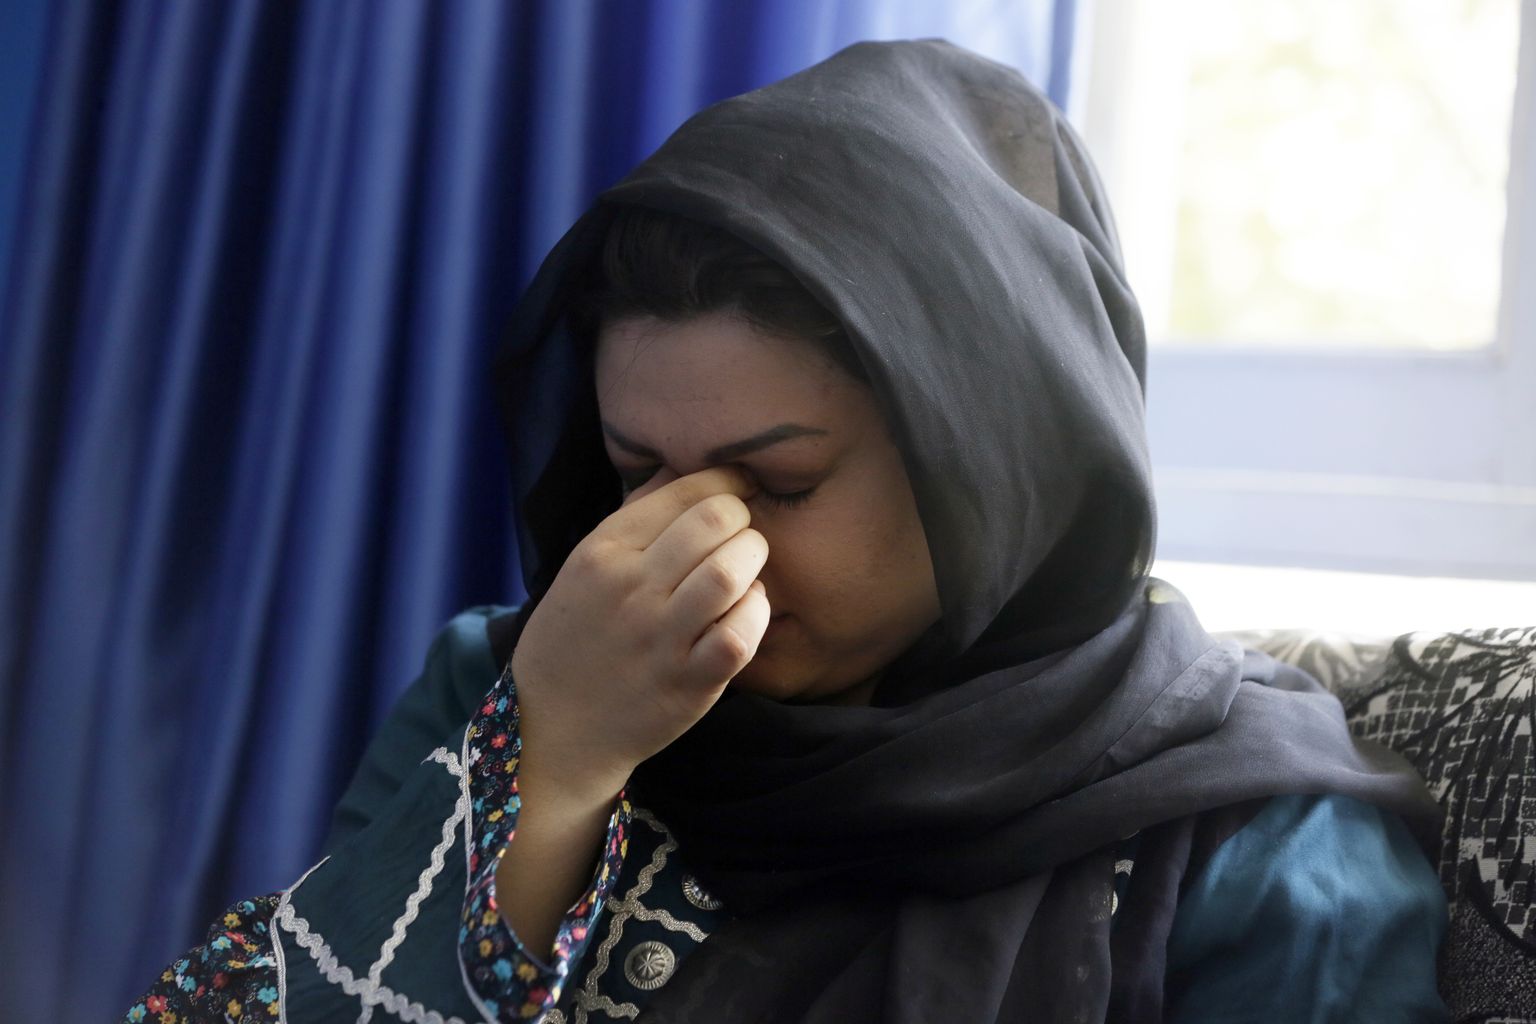 Naiste õiguste aktivist Zarmina Kakar nutmas AP intervjuu ajal.